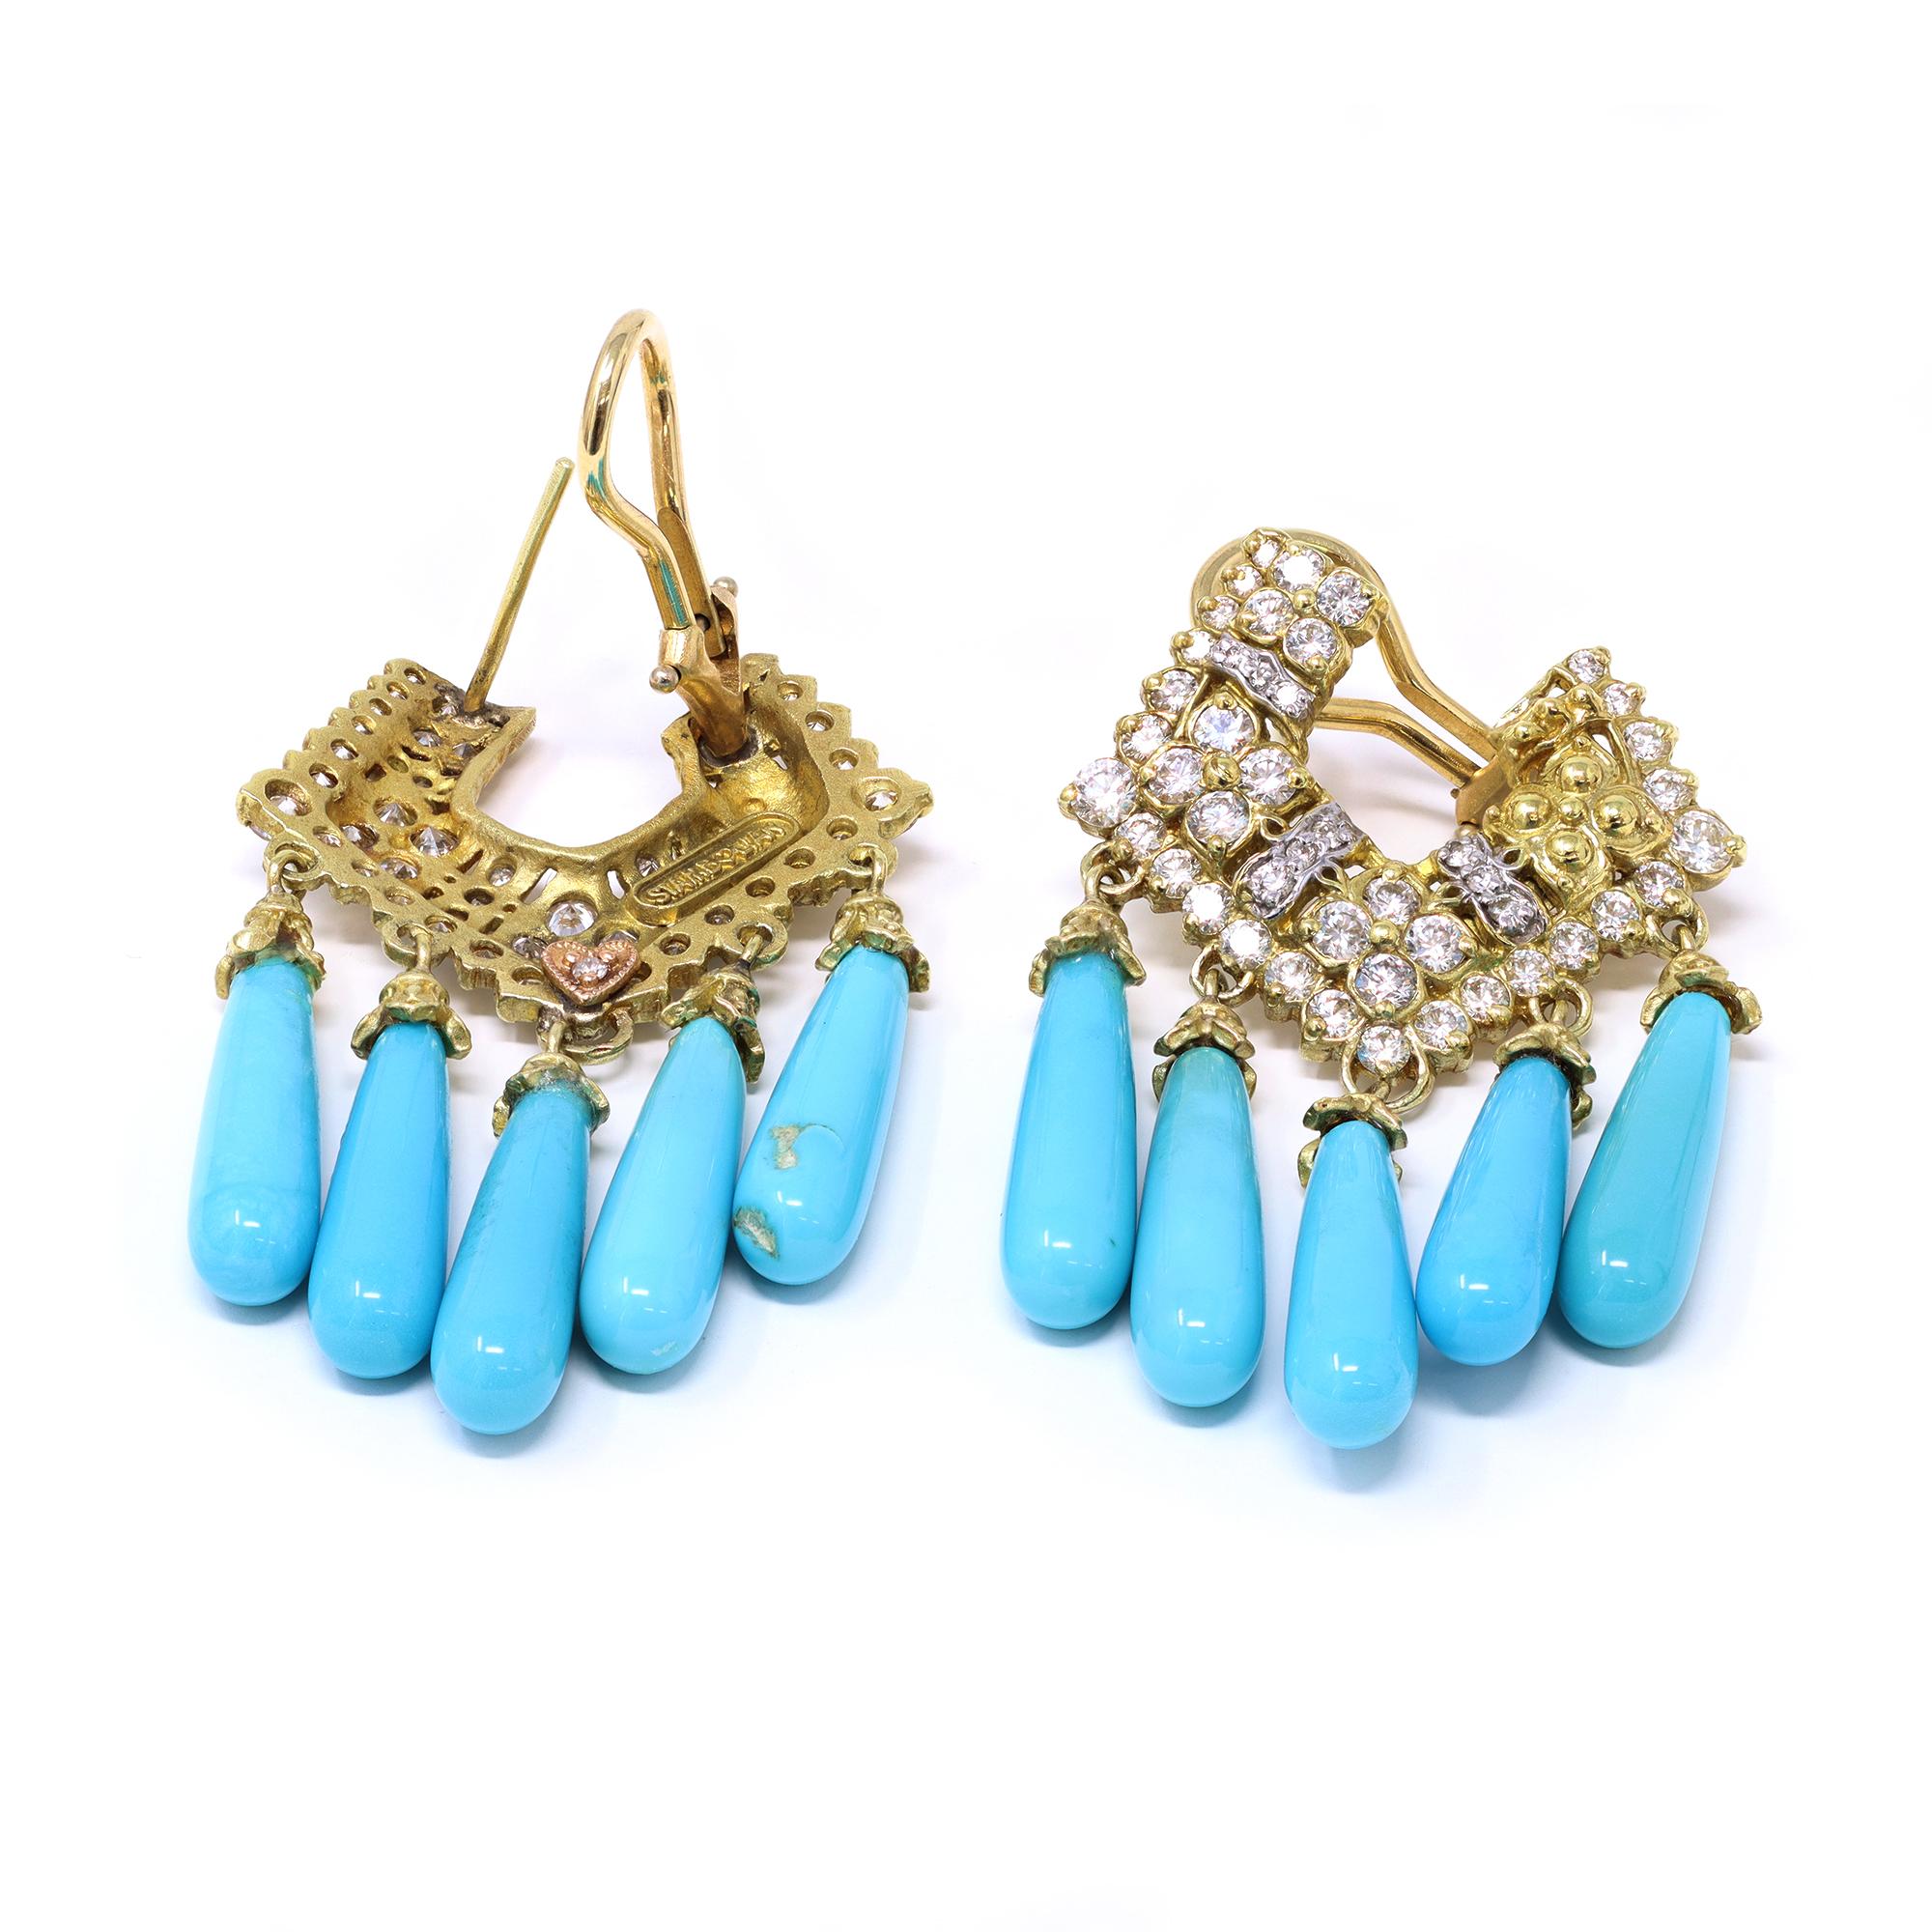 Ein Paar Türkis- und Diamant-Kronleuchter-Ohrclips, signiert Stambolian. Die Kronleuchter-Ohrringe sind aus 18-karätigem Gelbgold gefertigt und wurden in den USA hergestellt. Die Ohrringe bestehen aus 1,60 Karat exzellenten Diamanten der Farbe GH